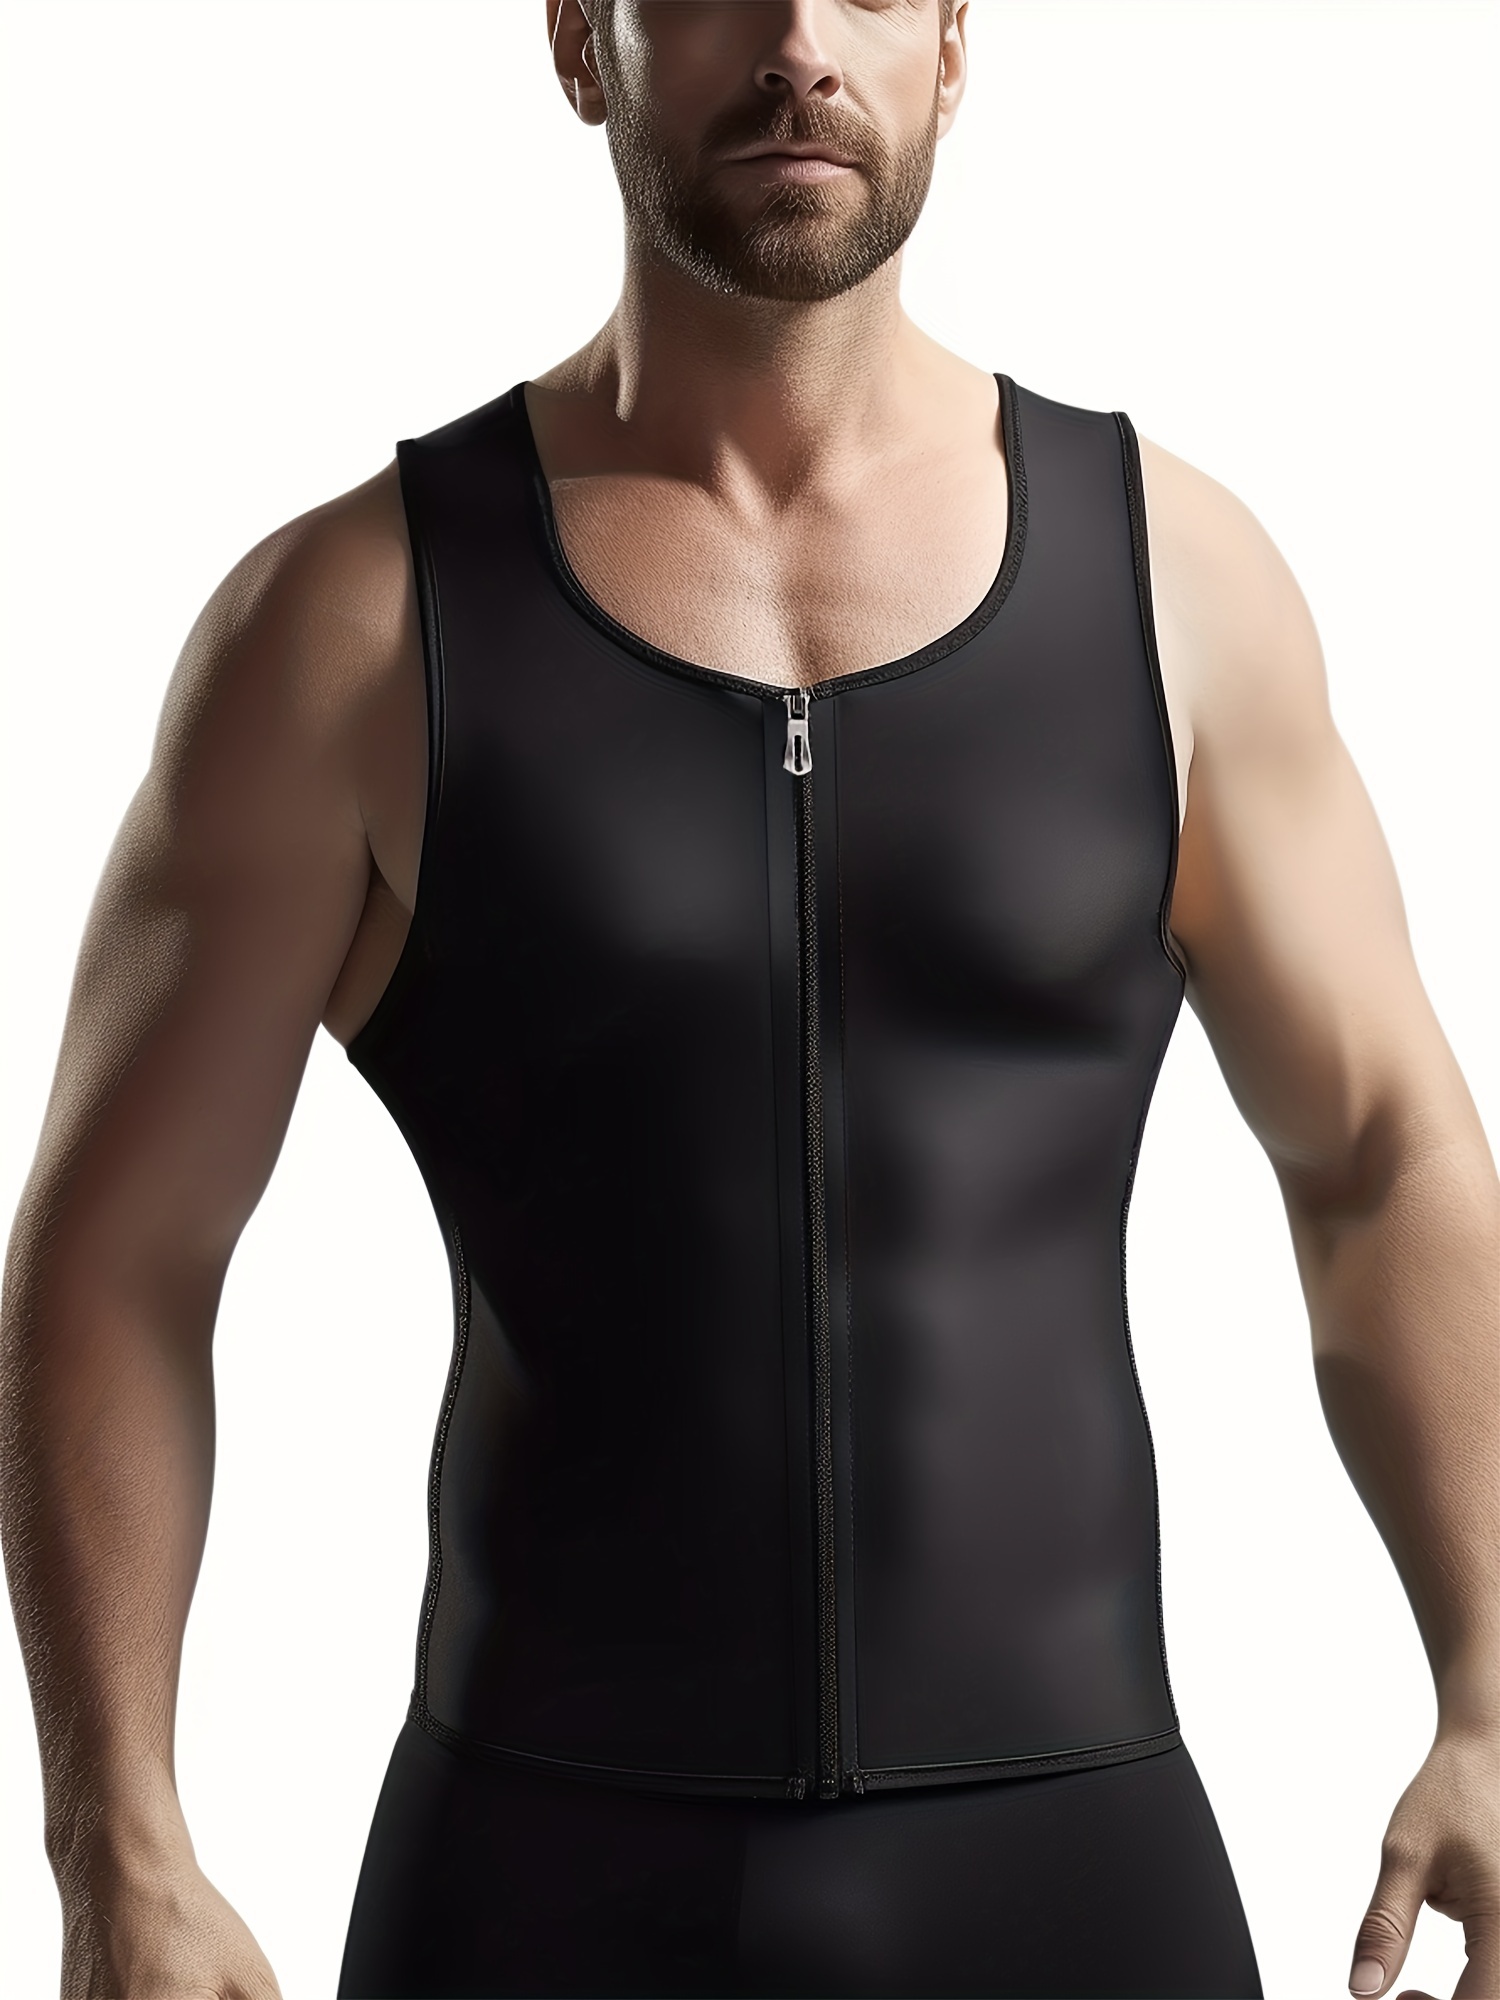 Scarboro Compression Vest Tops Men Slimming Body Shaper - Temu